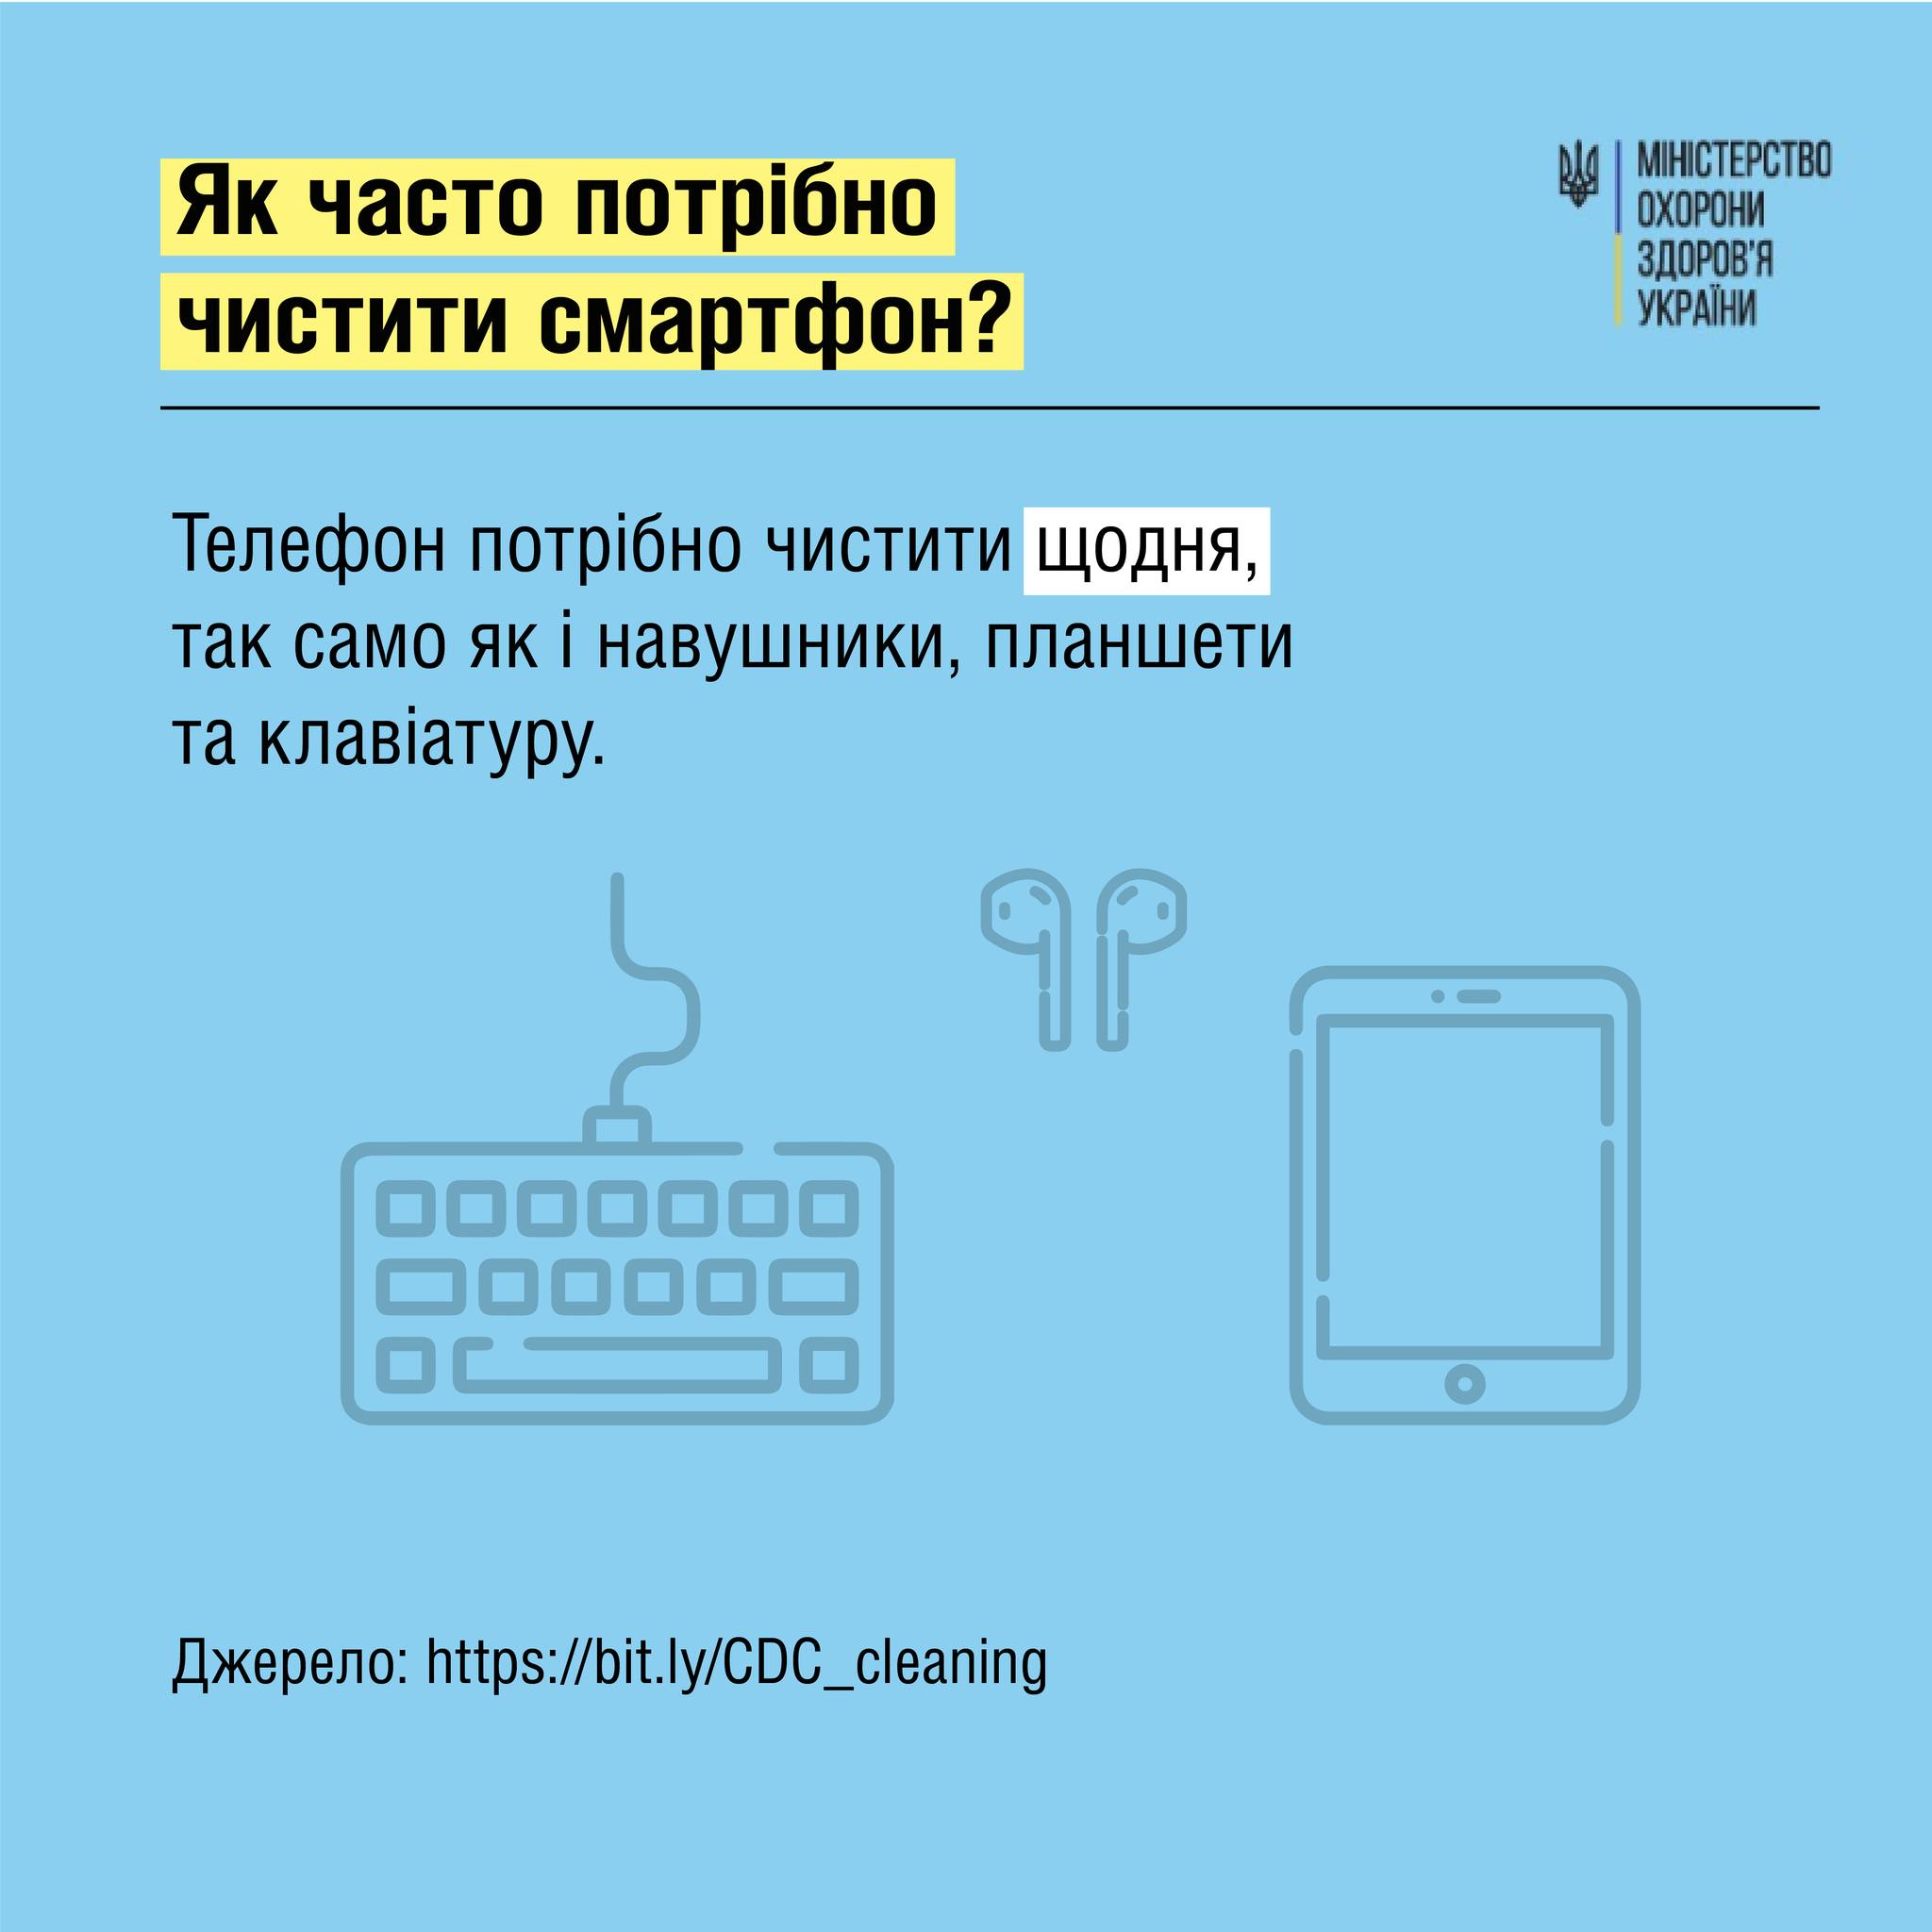 Советы МОЗ о чистке смартфона, с.2